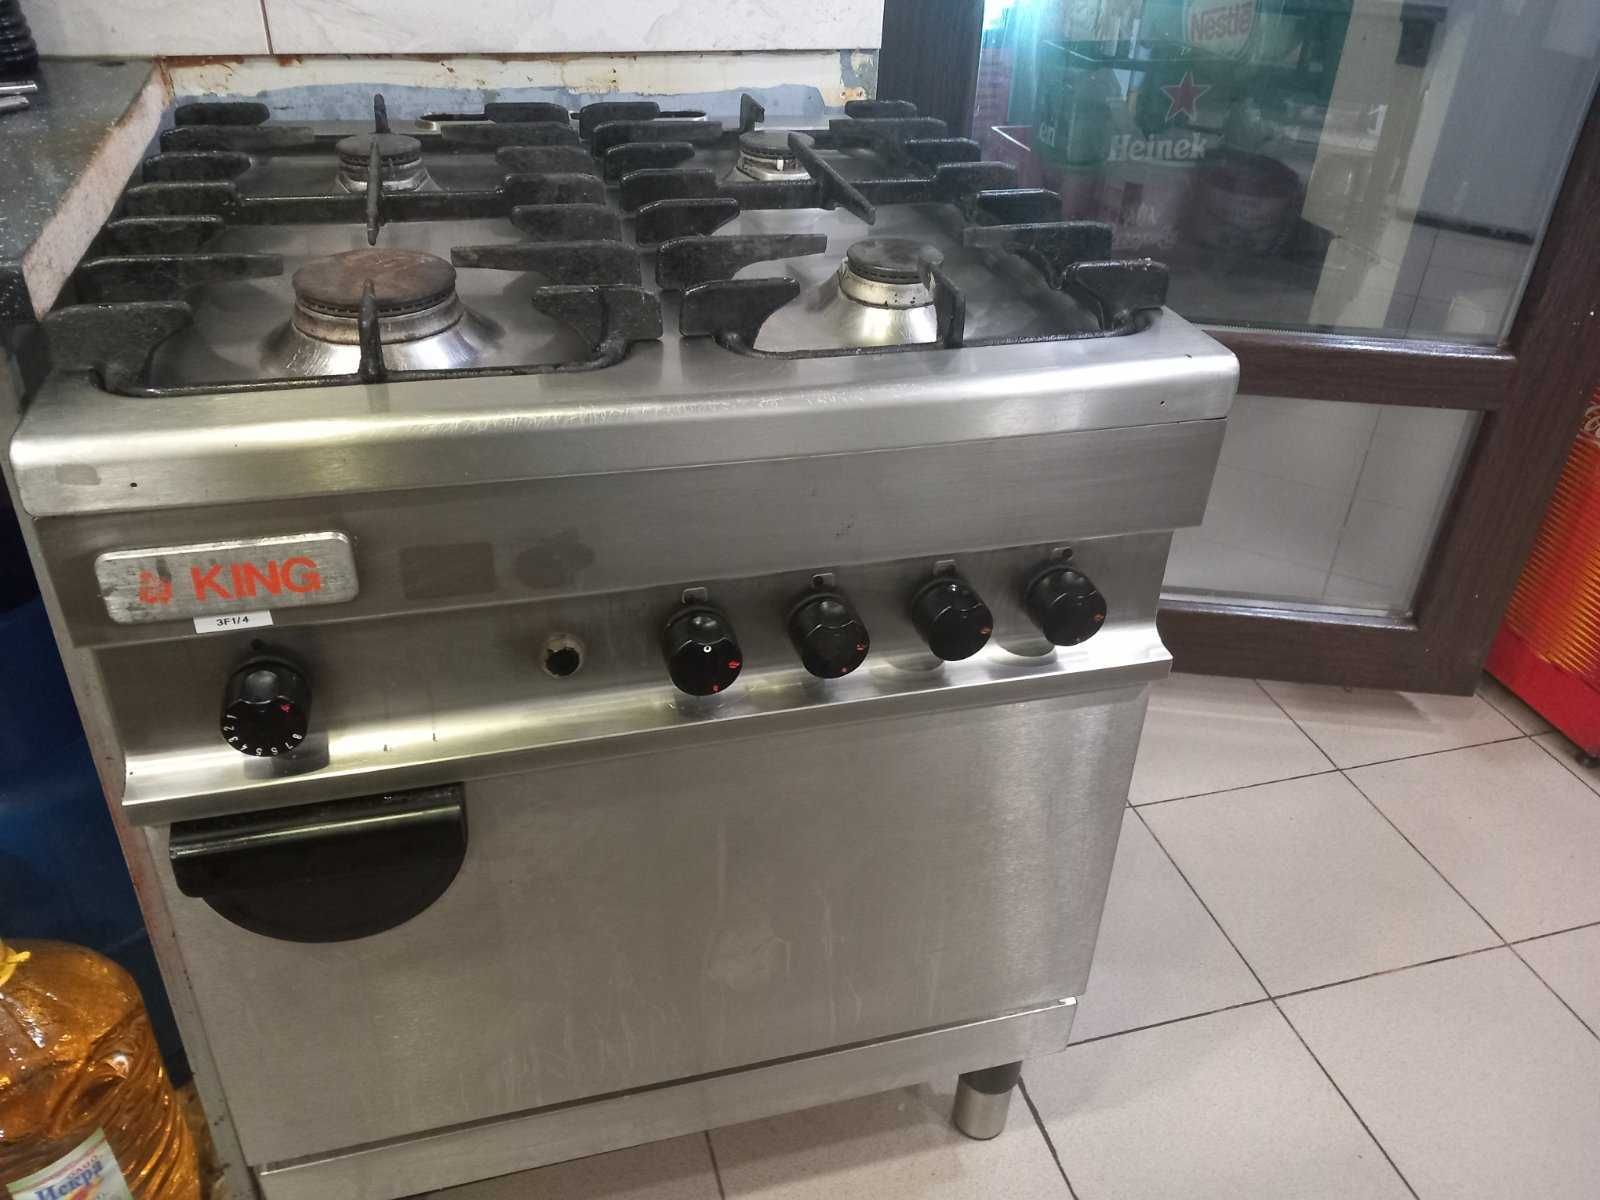 Професионална газова печка с четири котлона и фурна